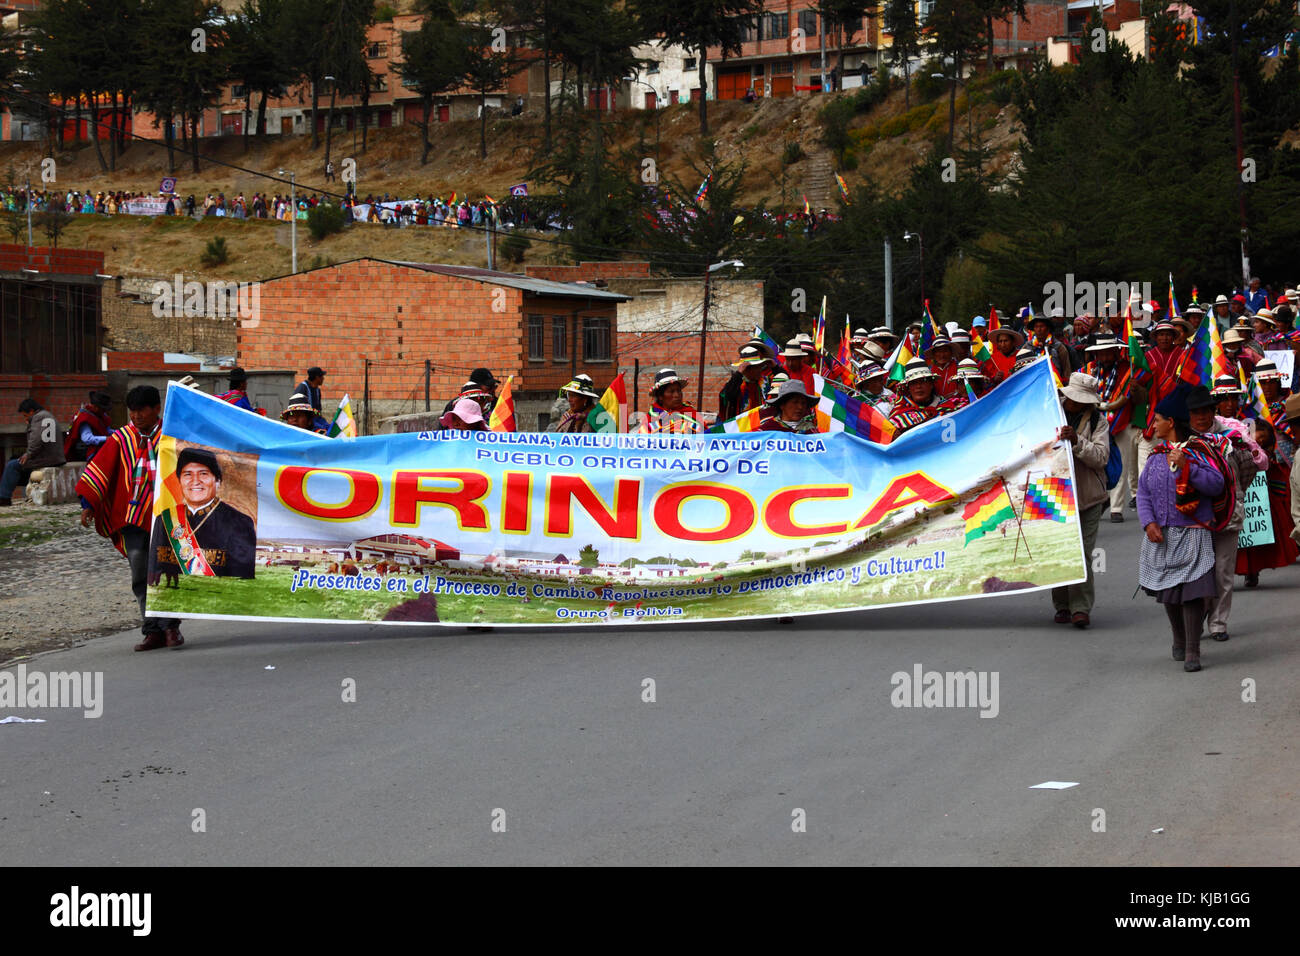 Aymaras de Orinoca prendre part à un gouvernement pro soutenir mars prévoit de construire une route à travers la région TIPNIS, La Paz, Bolivie Banque D'Images